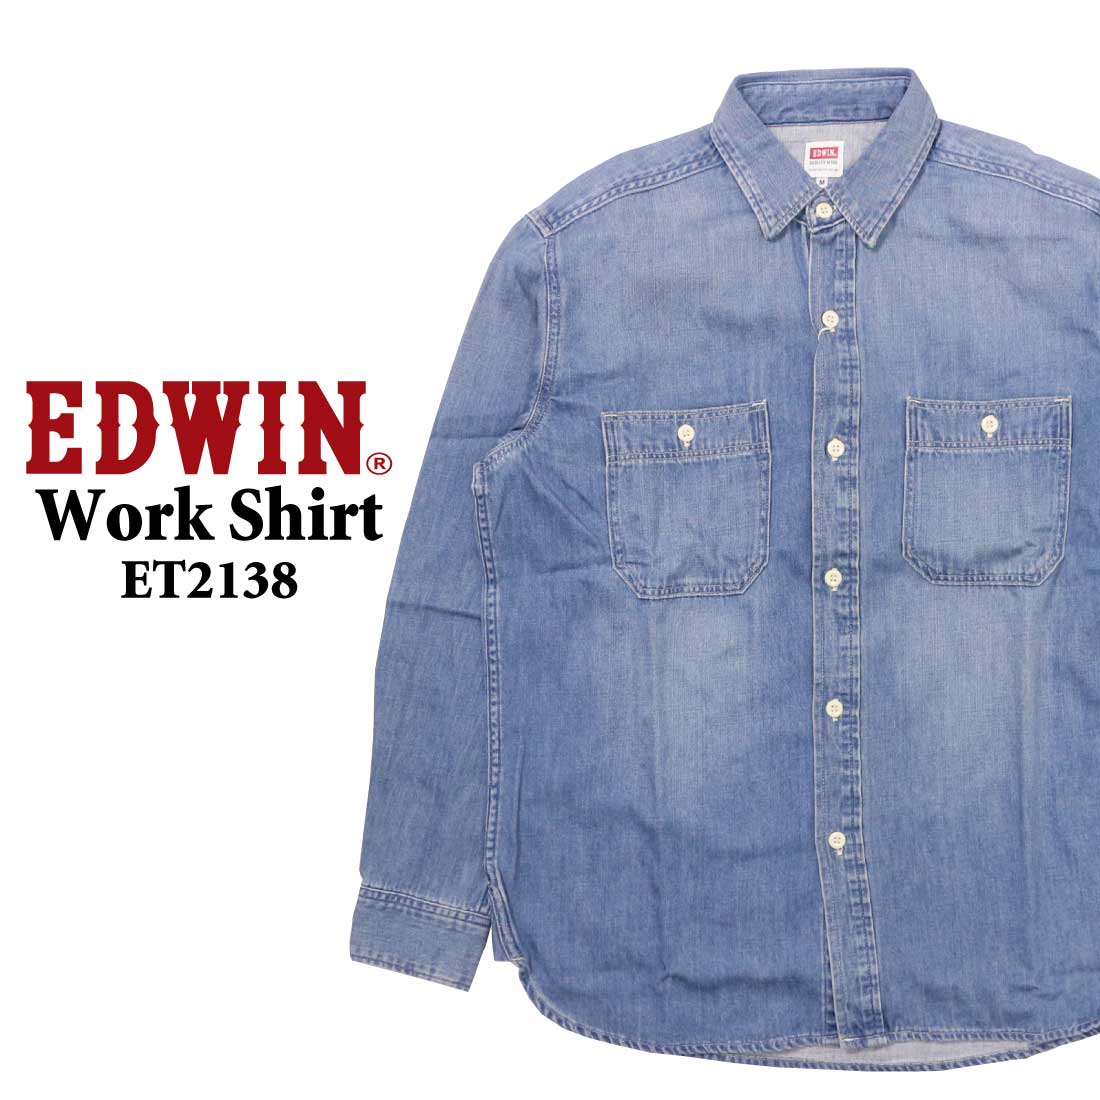 EDWIN 長袖 デニムシャツ ヒッコリー ブルー ボックス型 ET2138 ワークシャツ ライトオ...